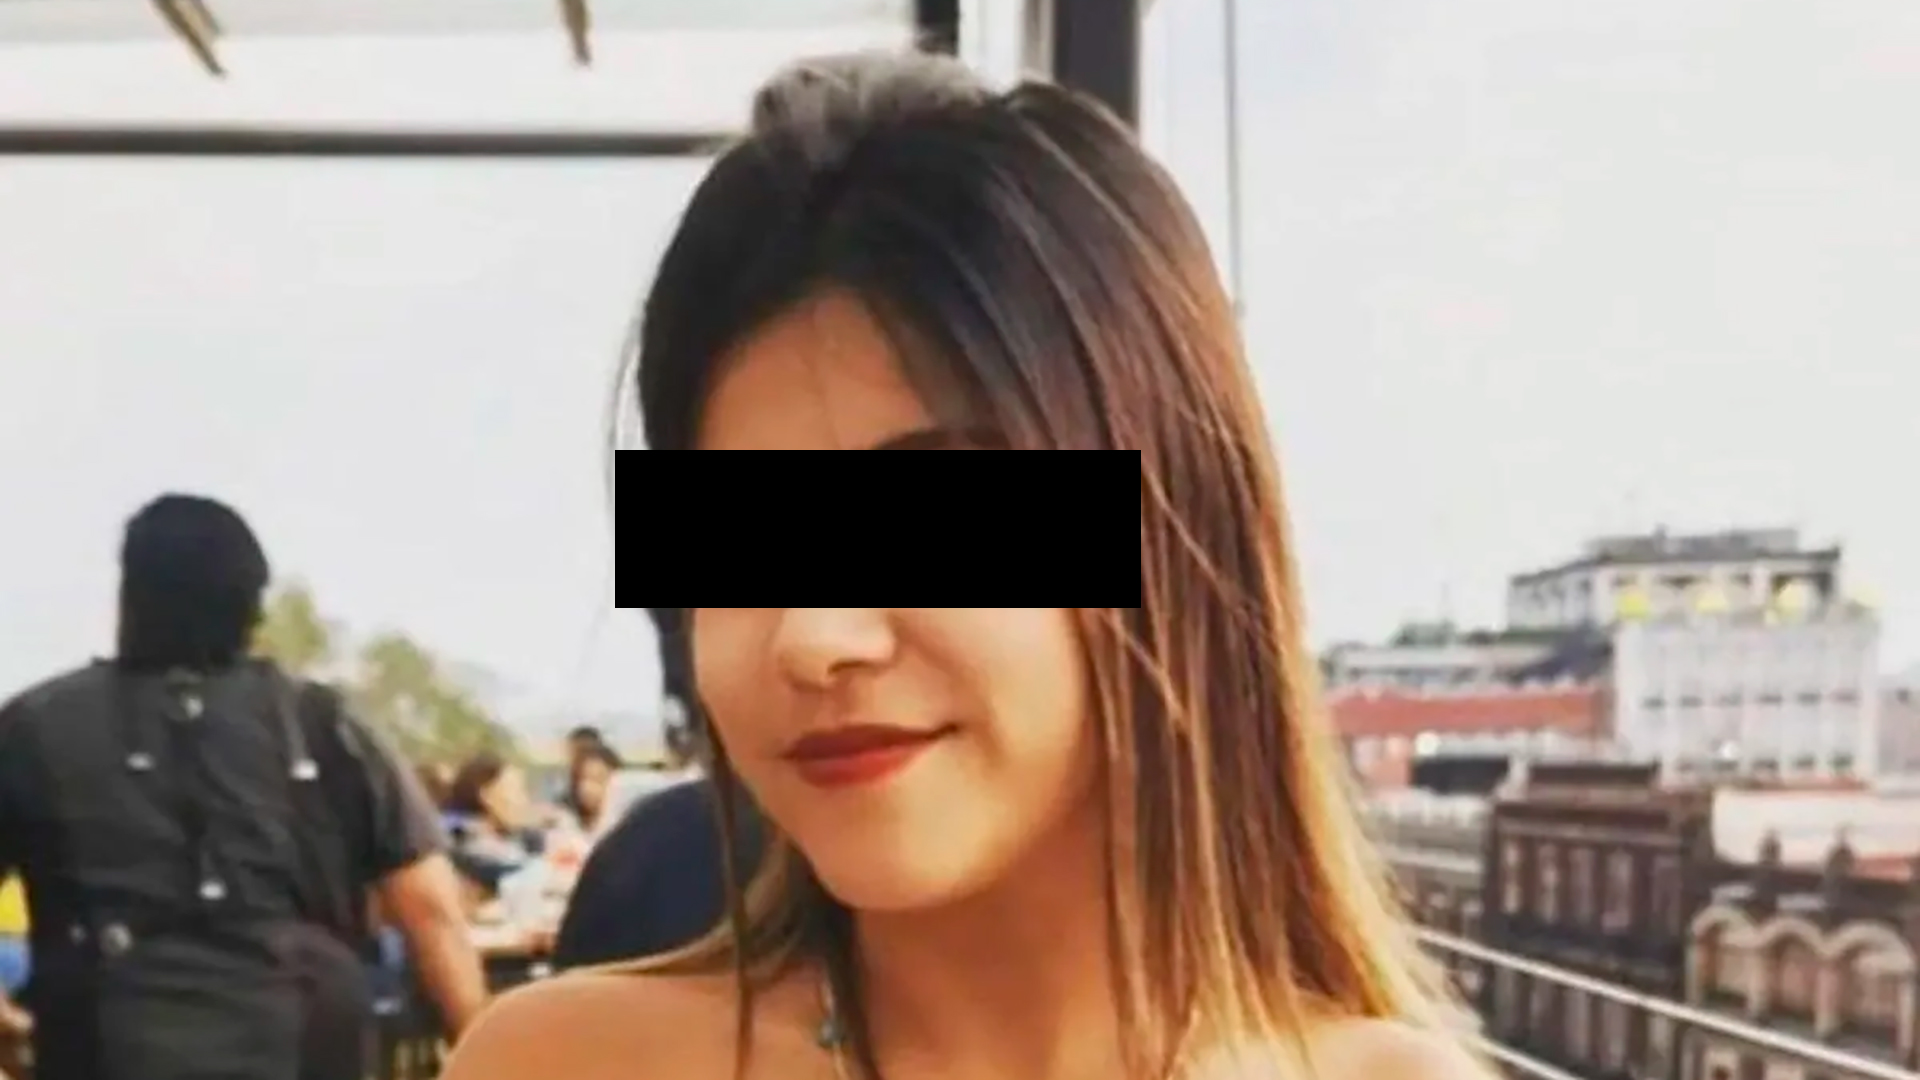 Ariadna Fernanda se trasladó al departamento de Rautel el 30 de octubre. Al día siguiente encontraron su cuerpo en una carretera de Morelos (Foto: Especial)